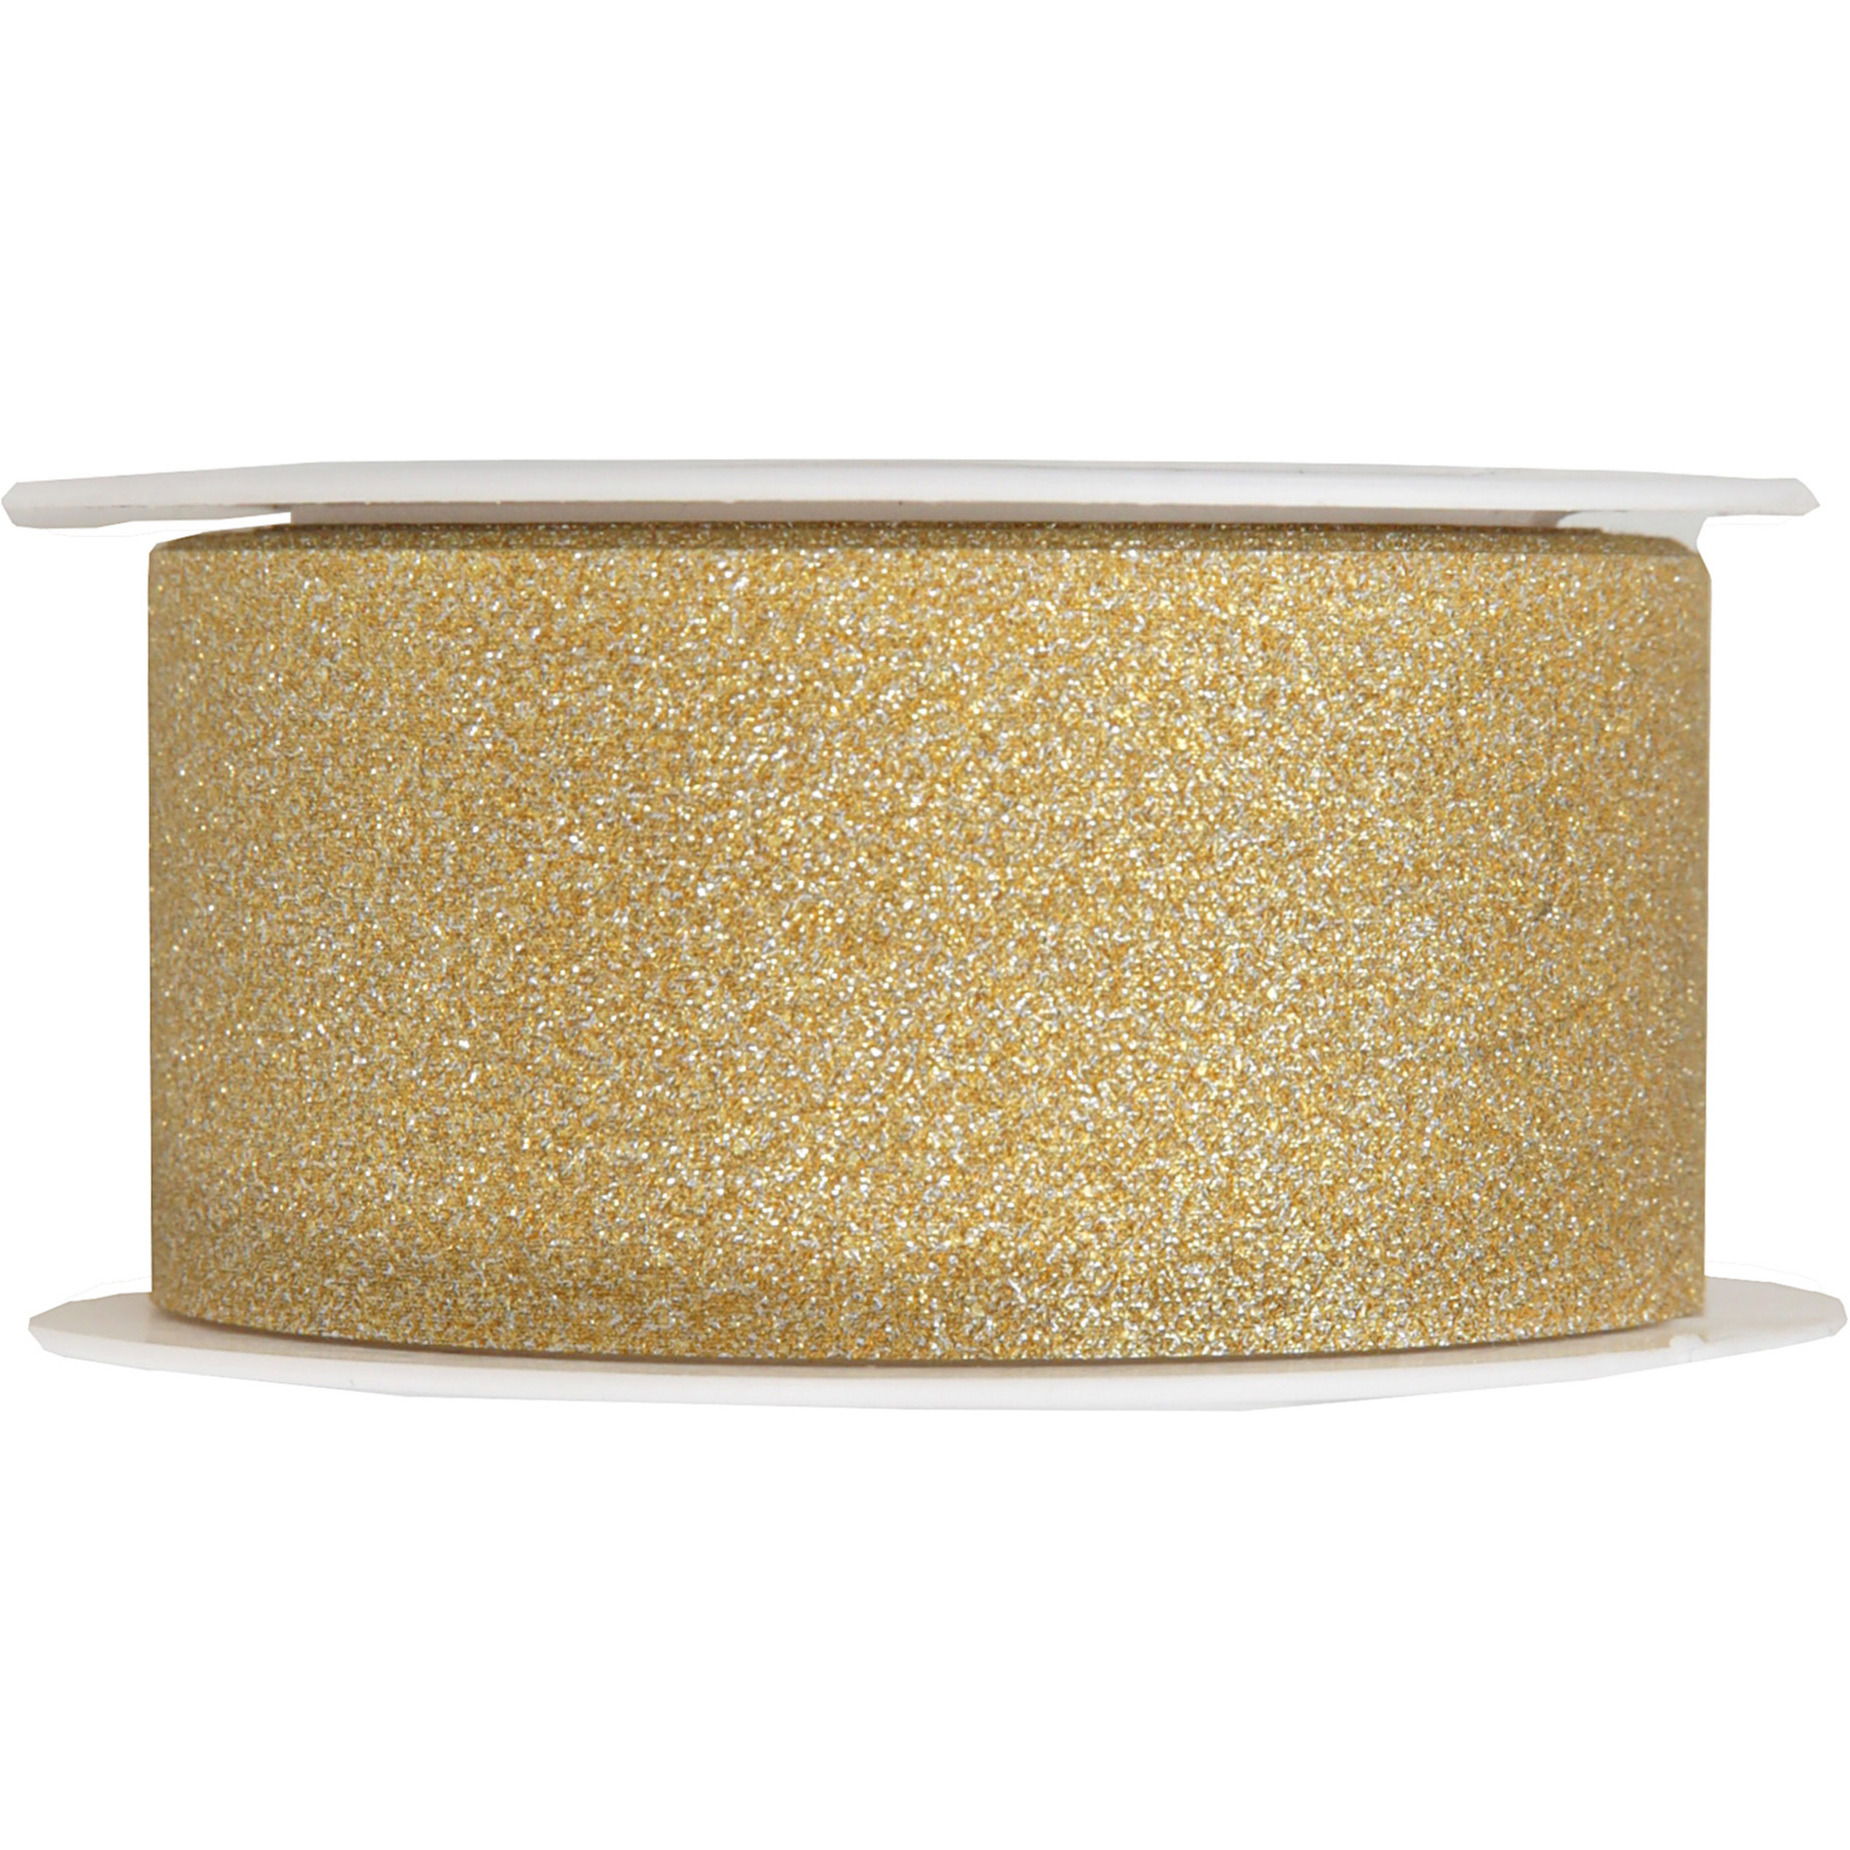 1x Hobby-decoratie gouden sierlinten met glitters 3 cm-30 mm x 5 meter